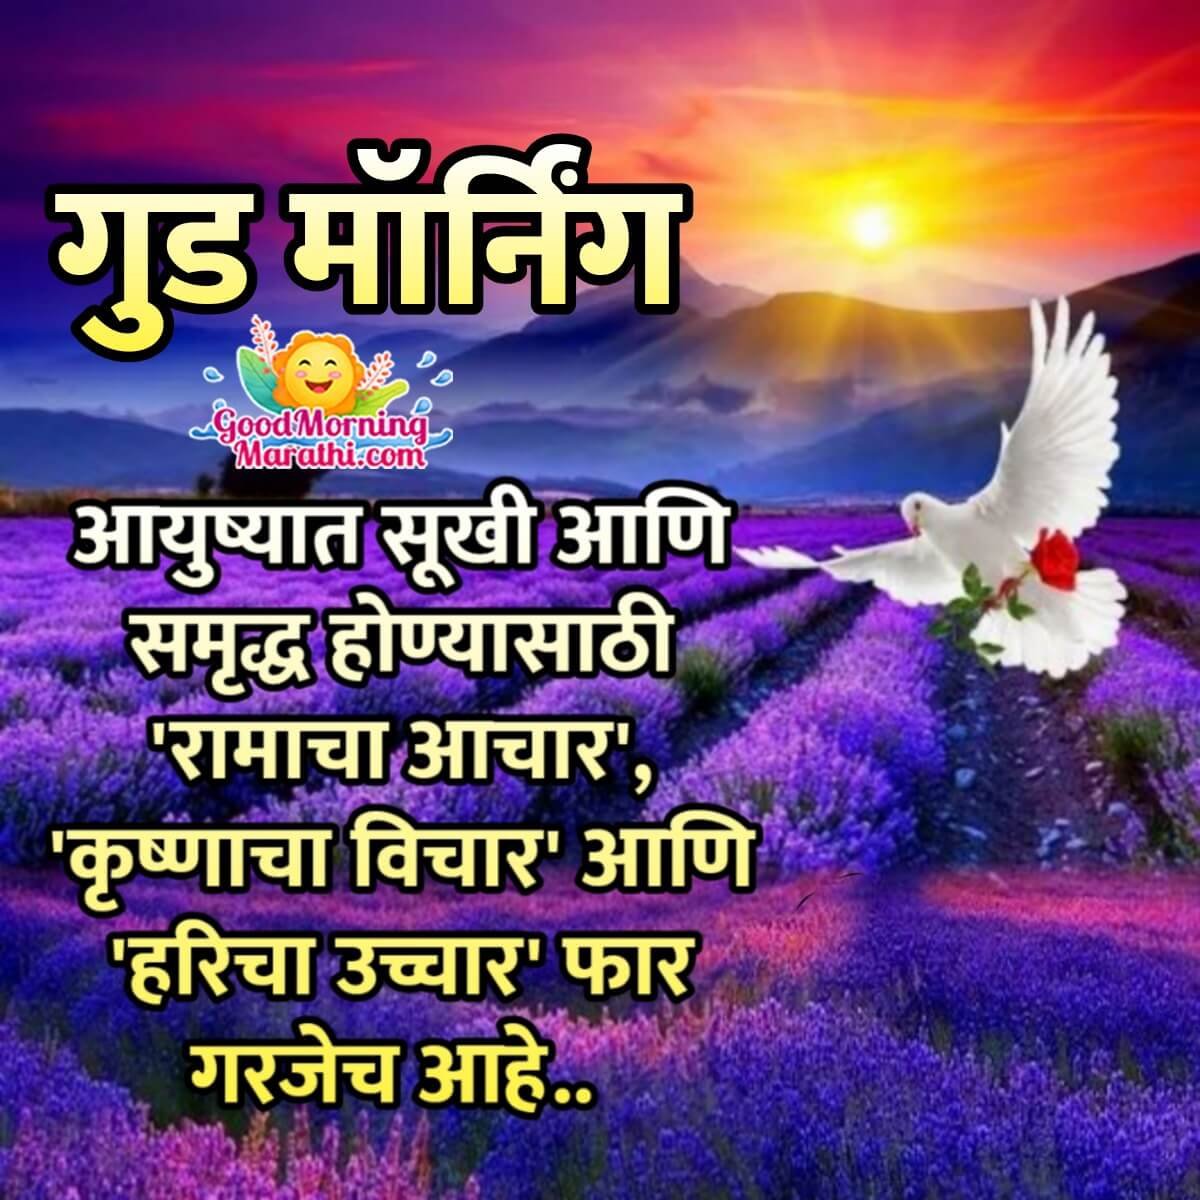 Good Morning Marathi Quotes Images